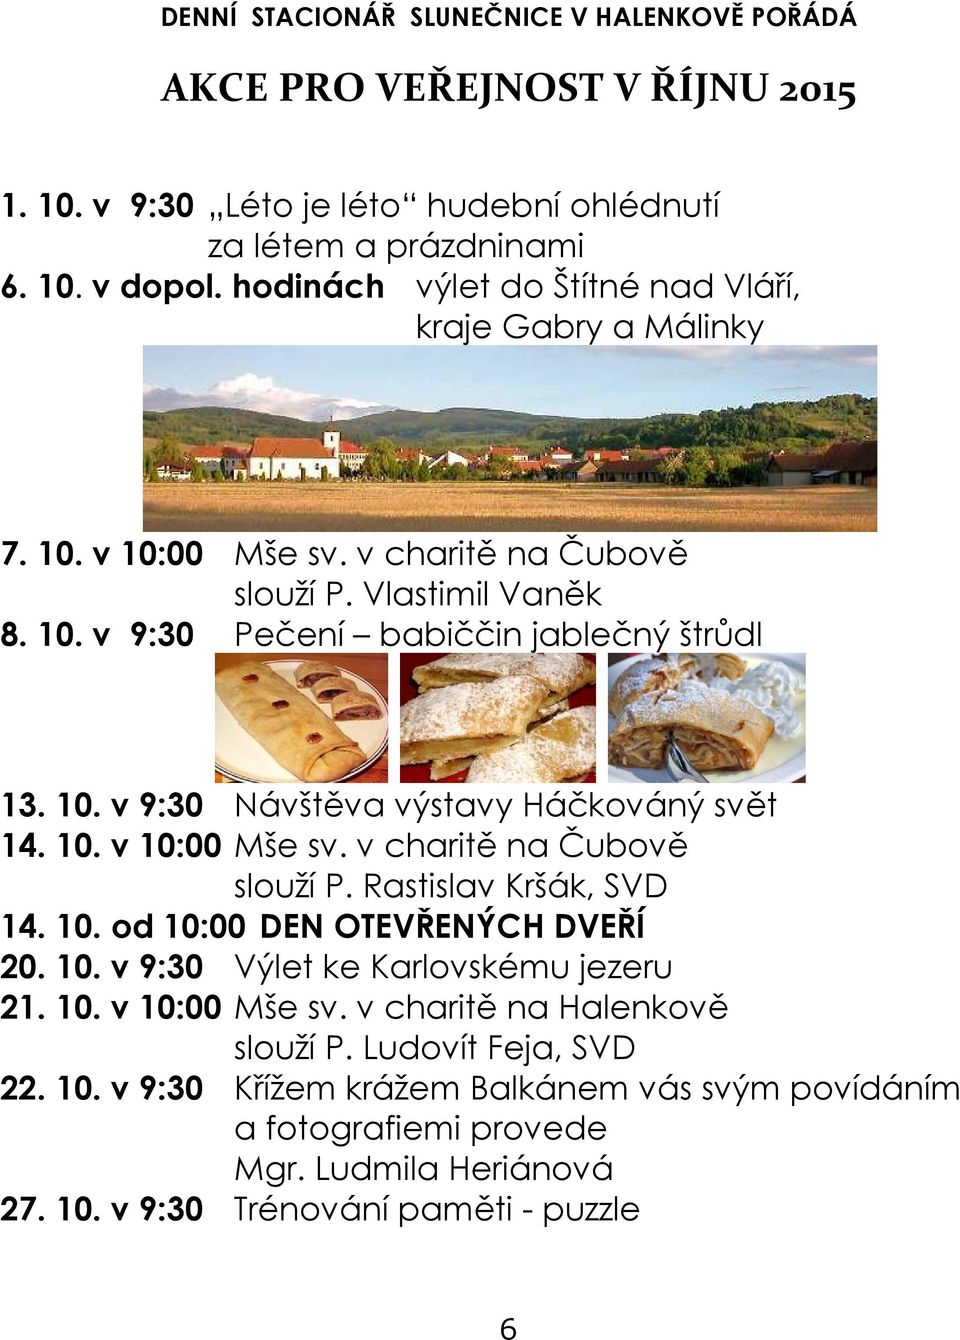 10. v 10:00 Mše sv. v charitě na Čubově slouží P. Rastislav Kršák, SVD 14. 10. od 10:00 DEN OTEVŘENÝCH DVEŘÍ 20. 10. v 9:30 Výlet ke Karlovskému jezeru 21. 10. v 10:00 Mše sv. v charitě na Halenkově slouží P.